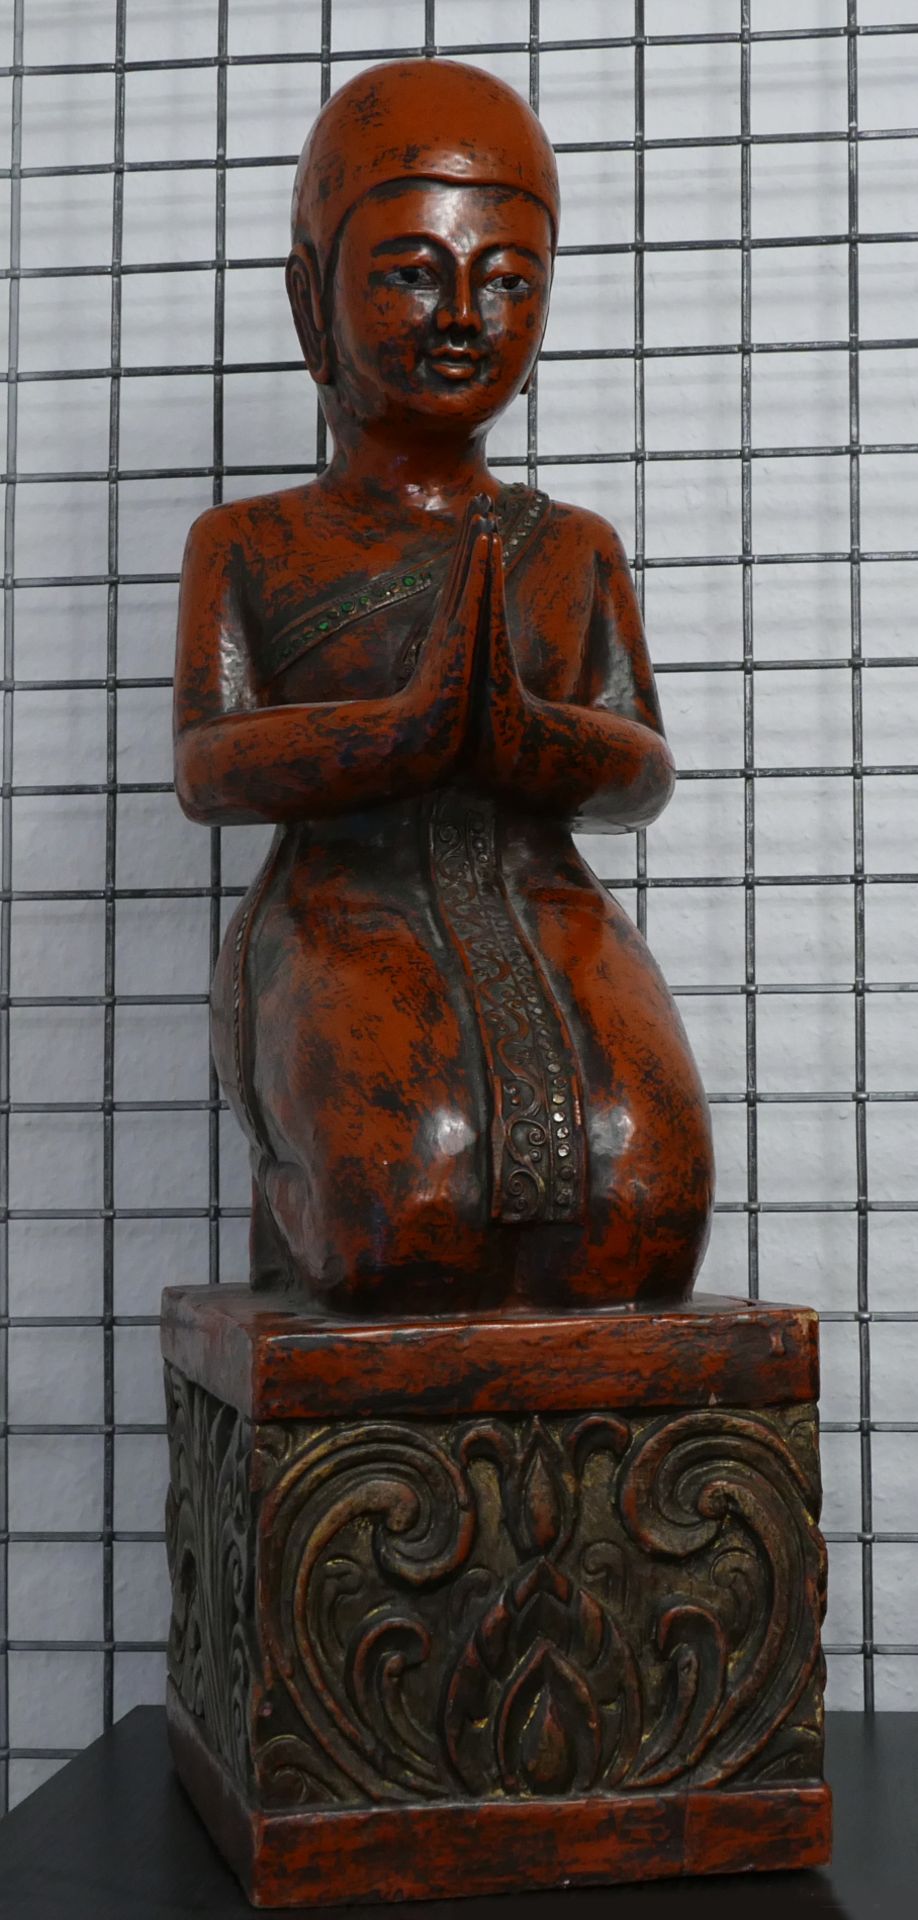 4 Holzfiguren nztl. bemalt/vergoldet je mit Schmucksteinen verziert: 3x "Buddha", 1x "Betender Mönch